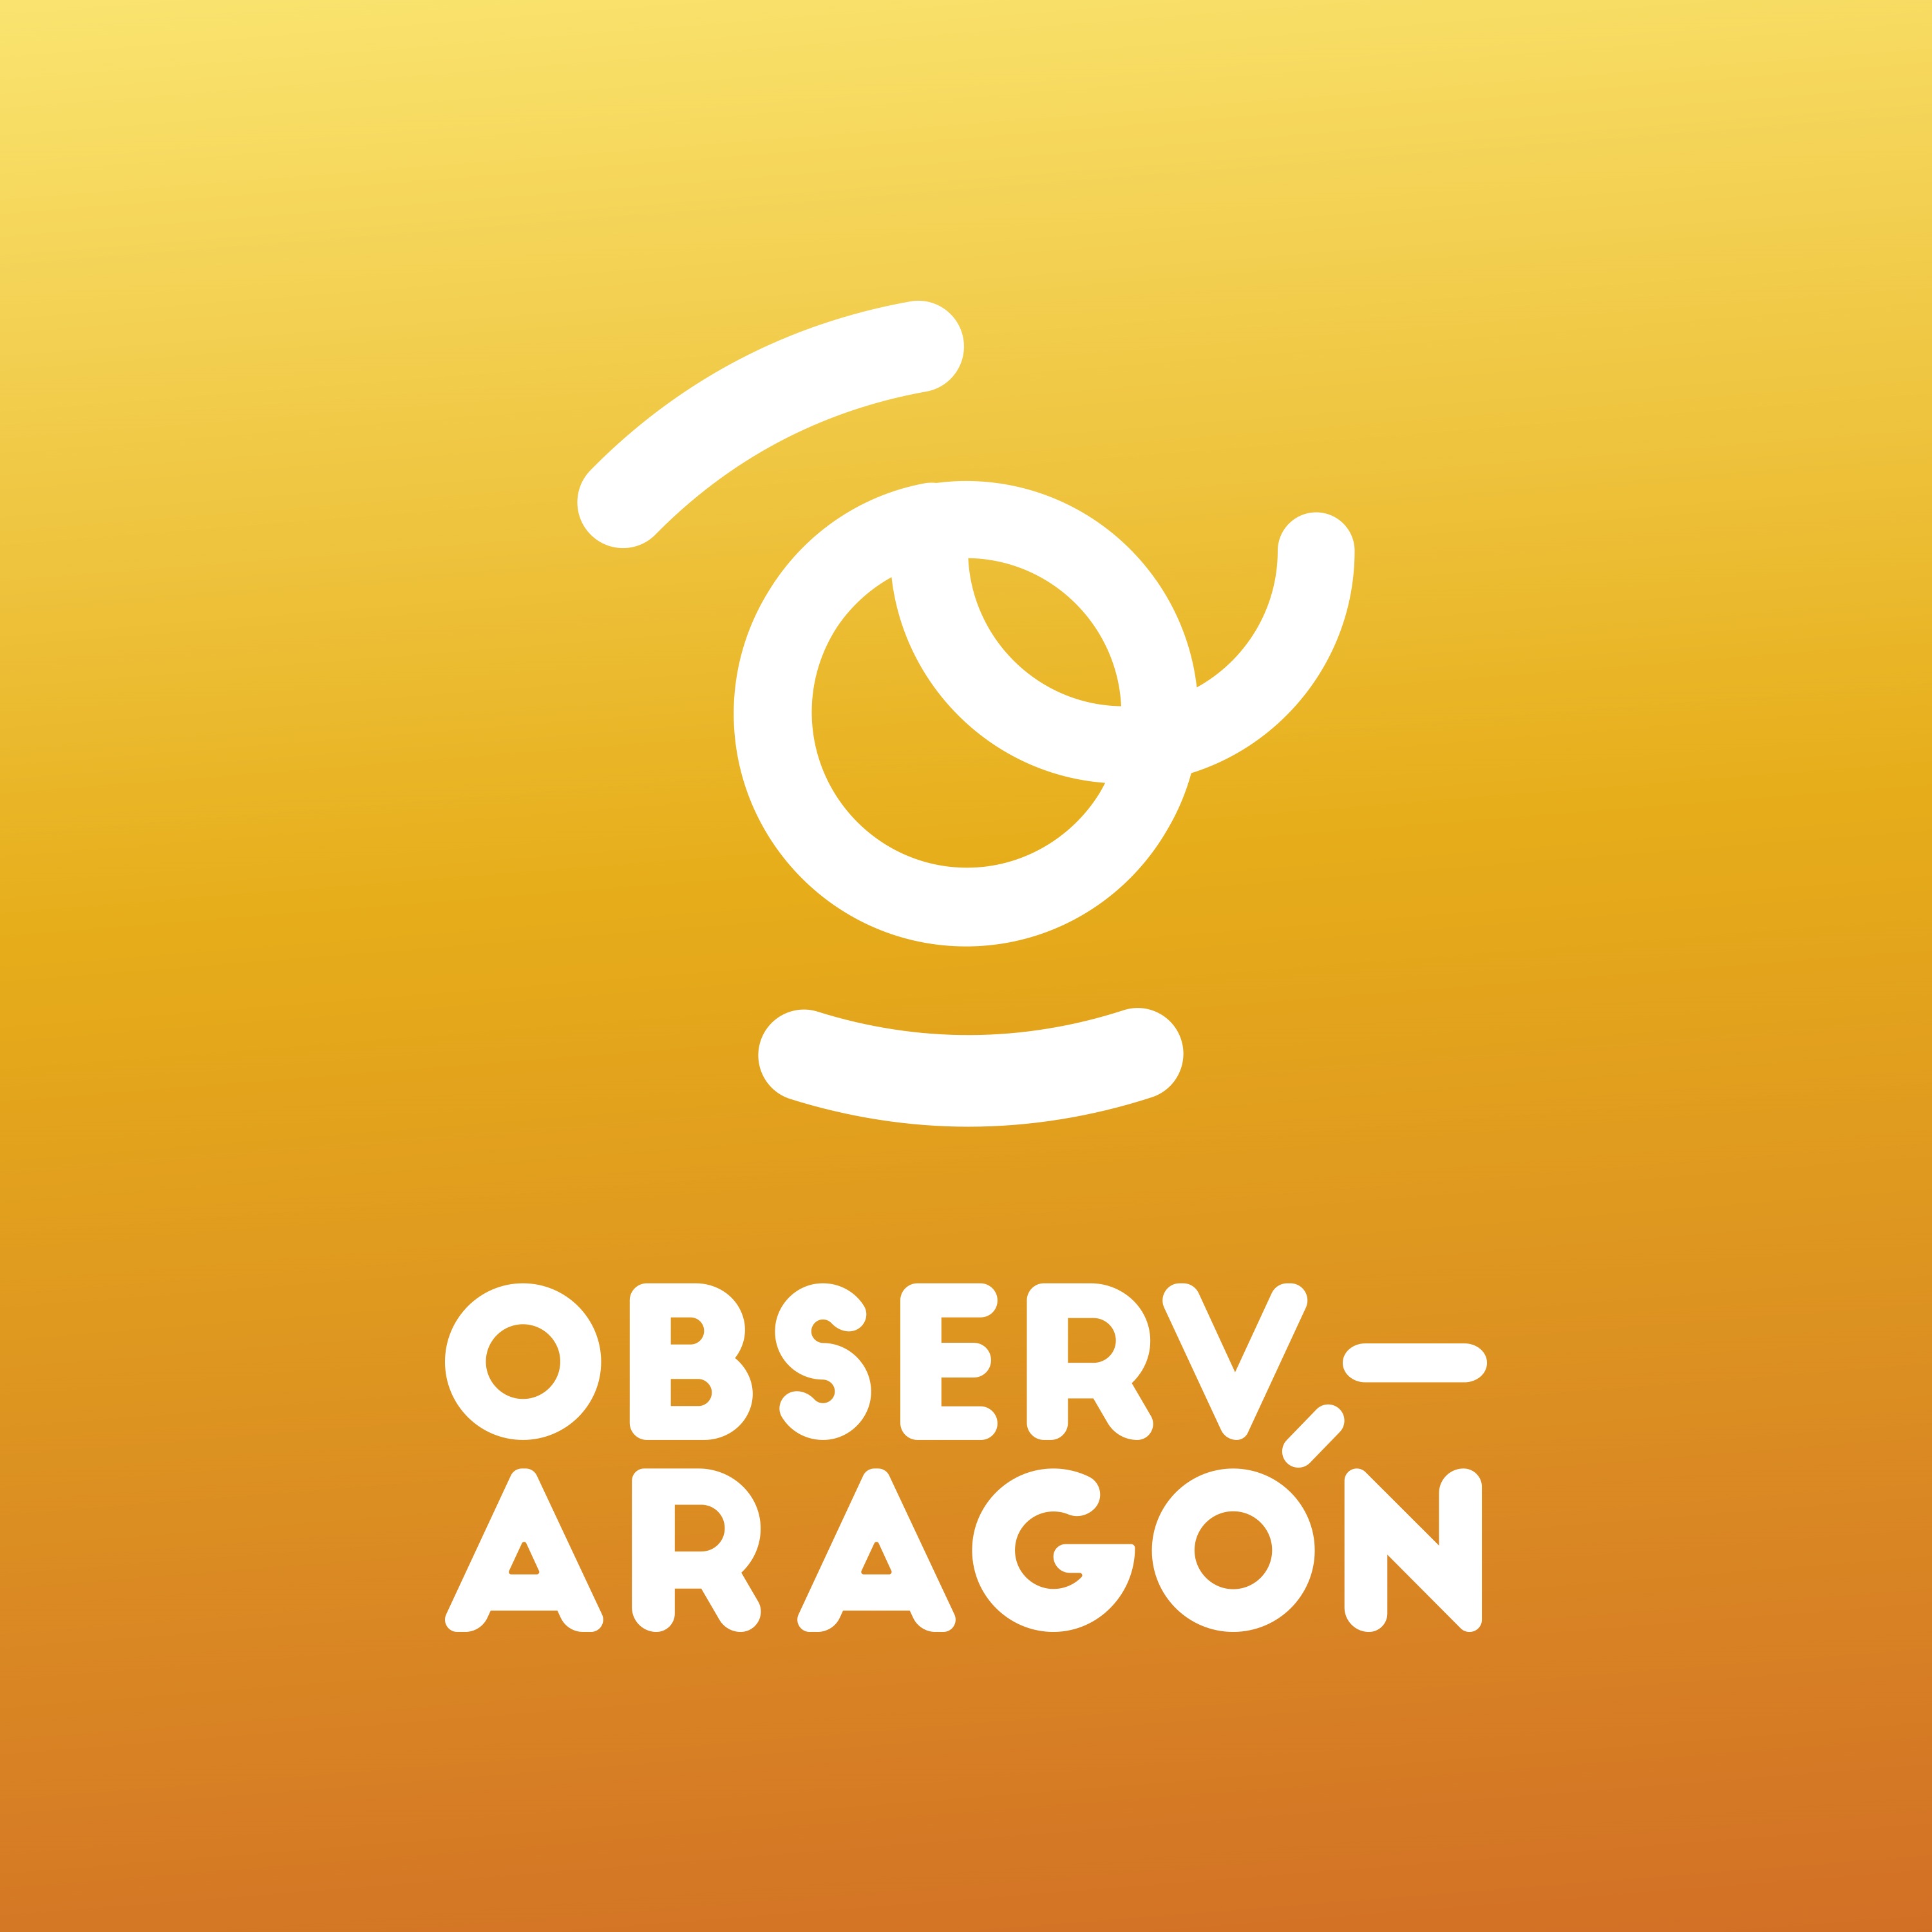 Sobre un fondo naranja en blanco aparece la letra o con forma de 2 y debajo la leyenda obser_aragón.